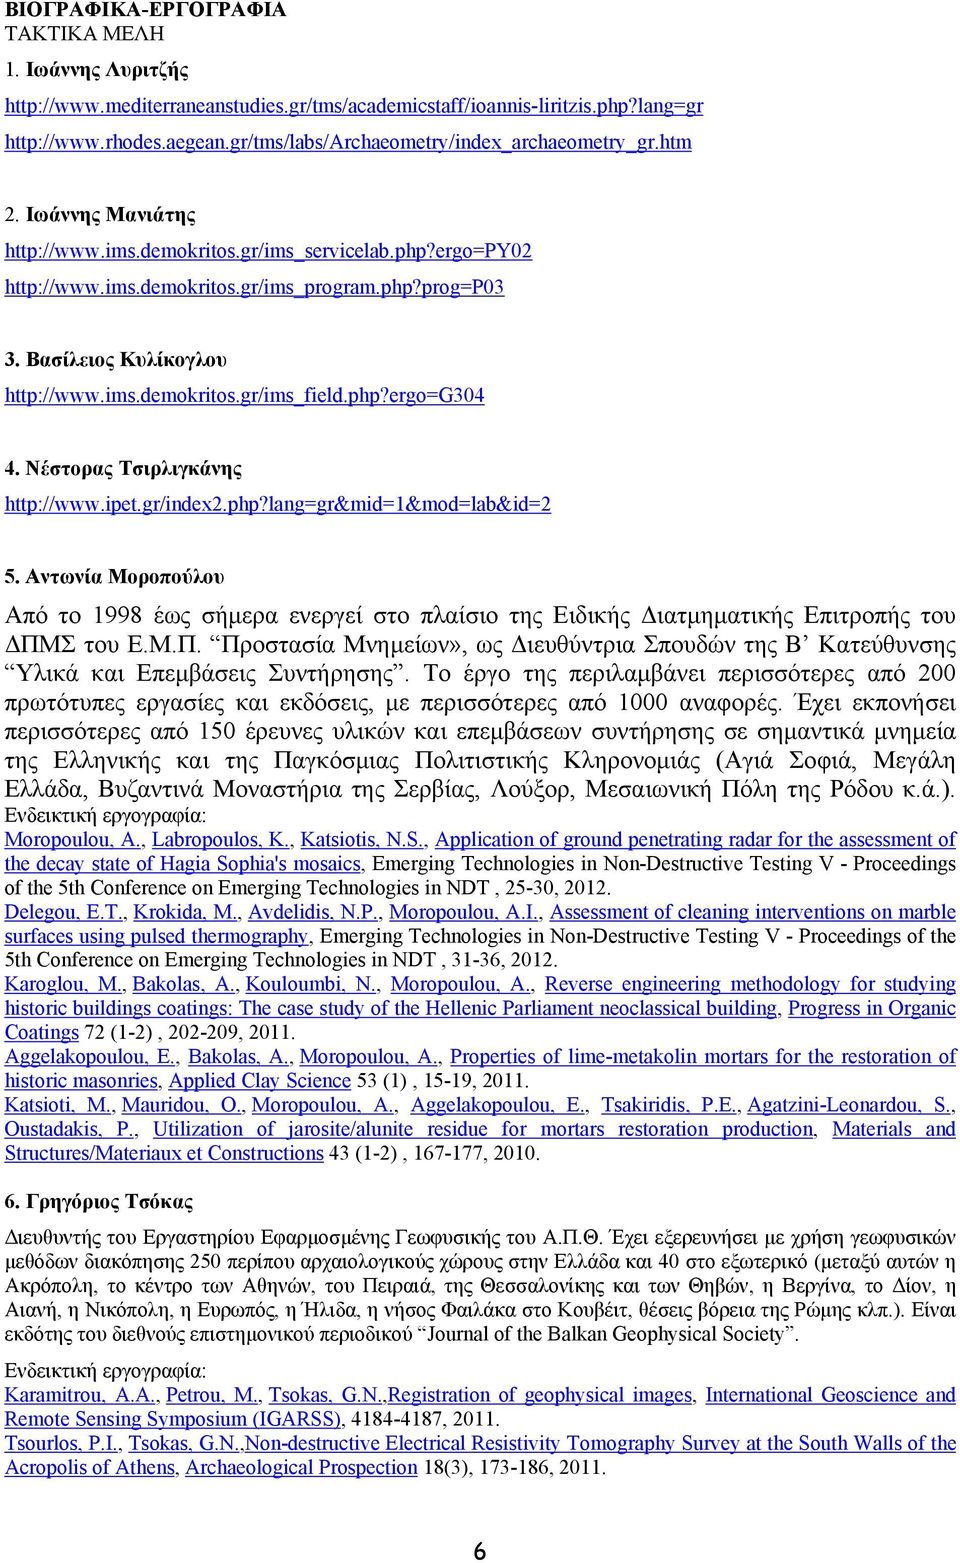 Βασίλειος Κυλίκογλου http://www.ims.demokritos.gr/ims_field.php?ergo=g304 4. Νέστορας Τσιρλιγκάνης http://www.ipet.gr/index2.php?lang=gr&mid=1&mod=lab&id=2 5.